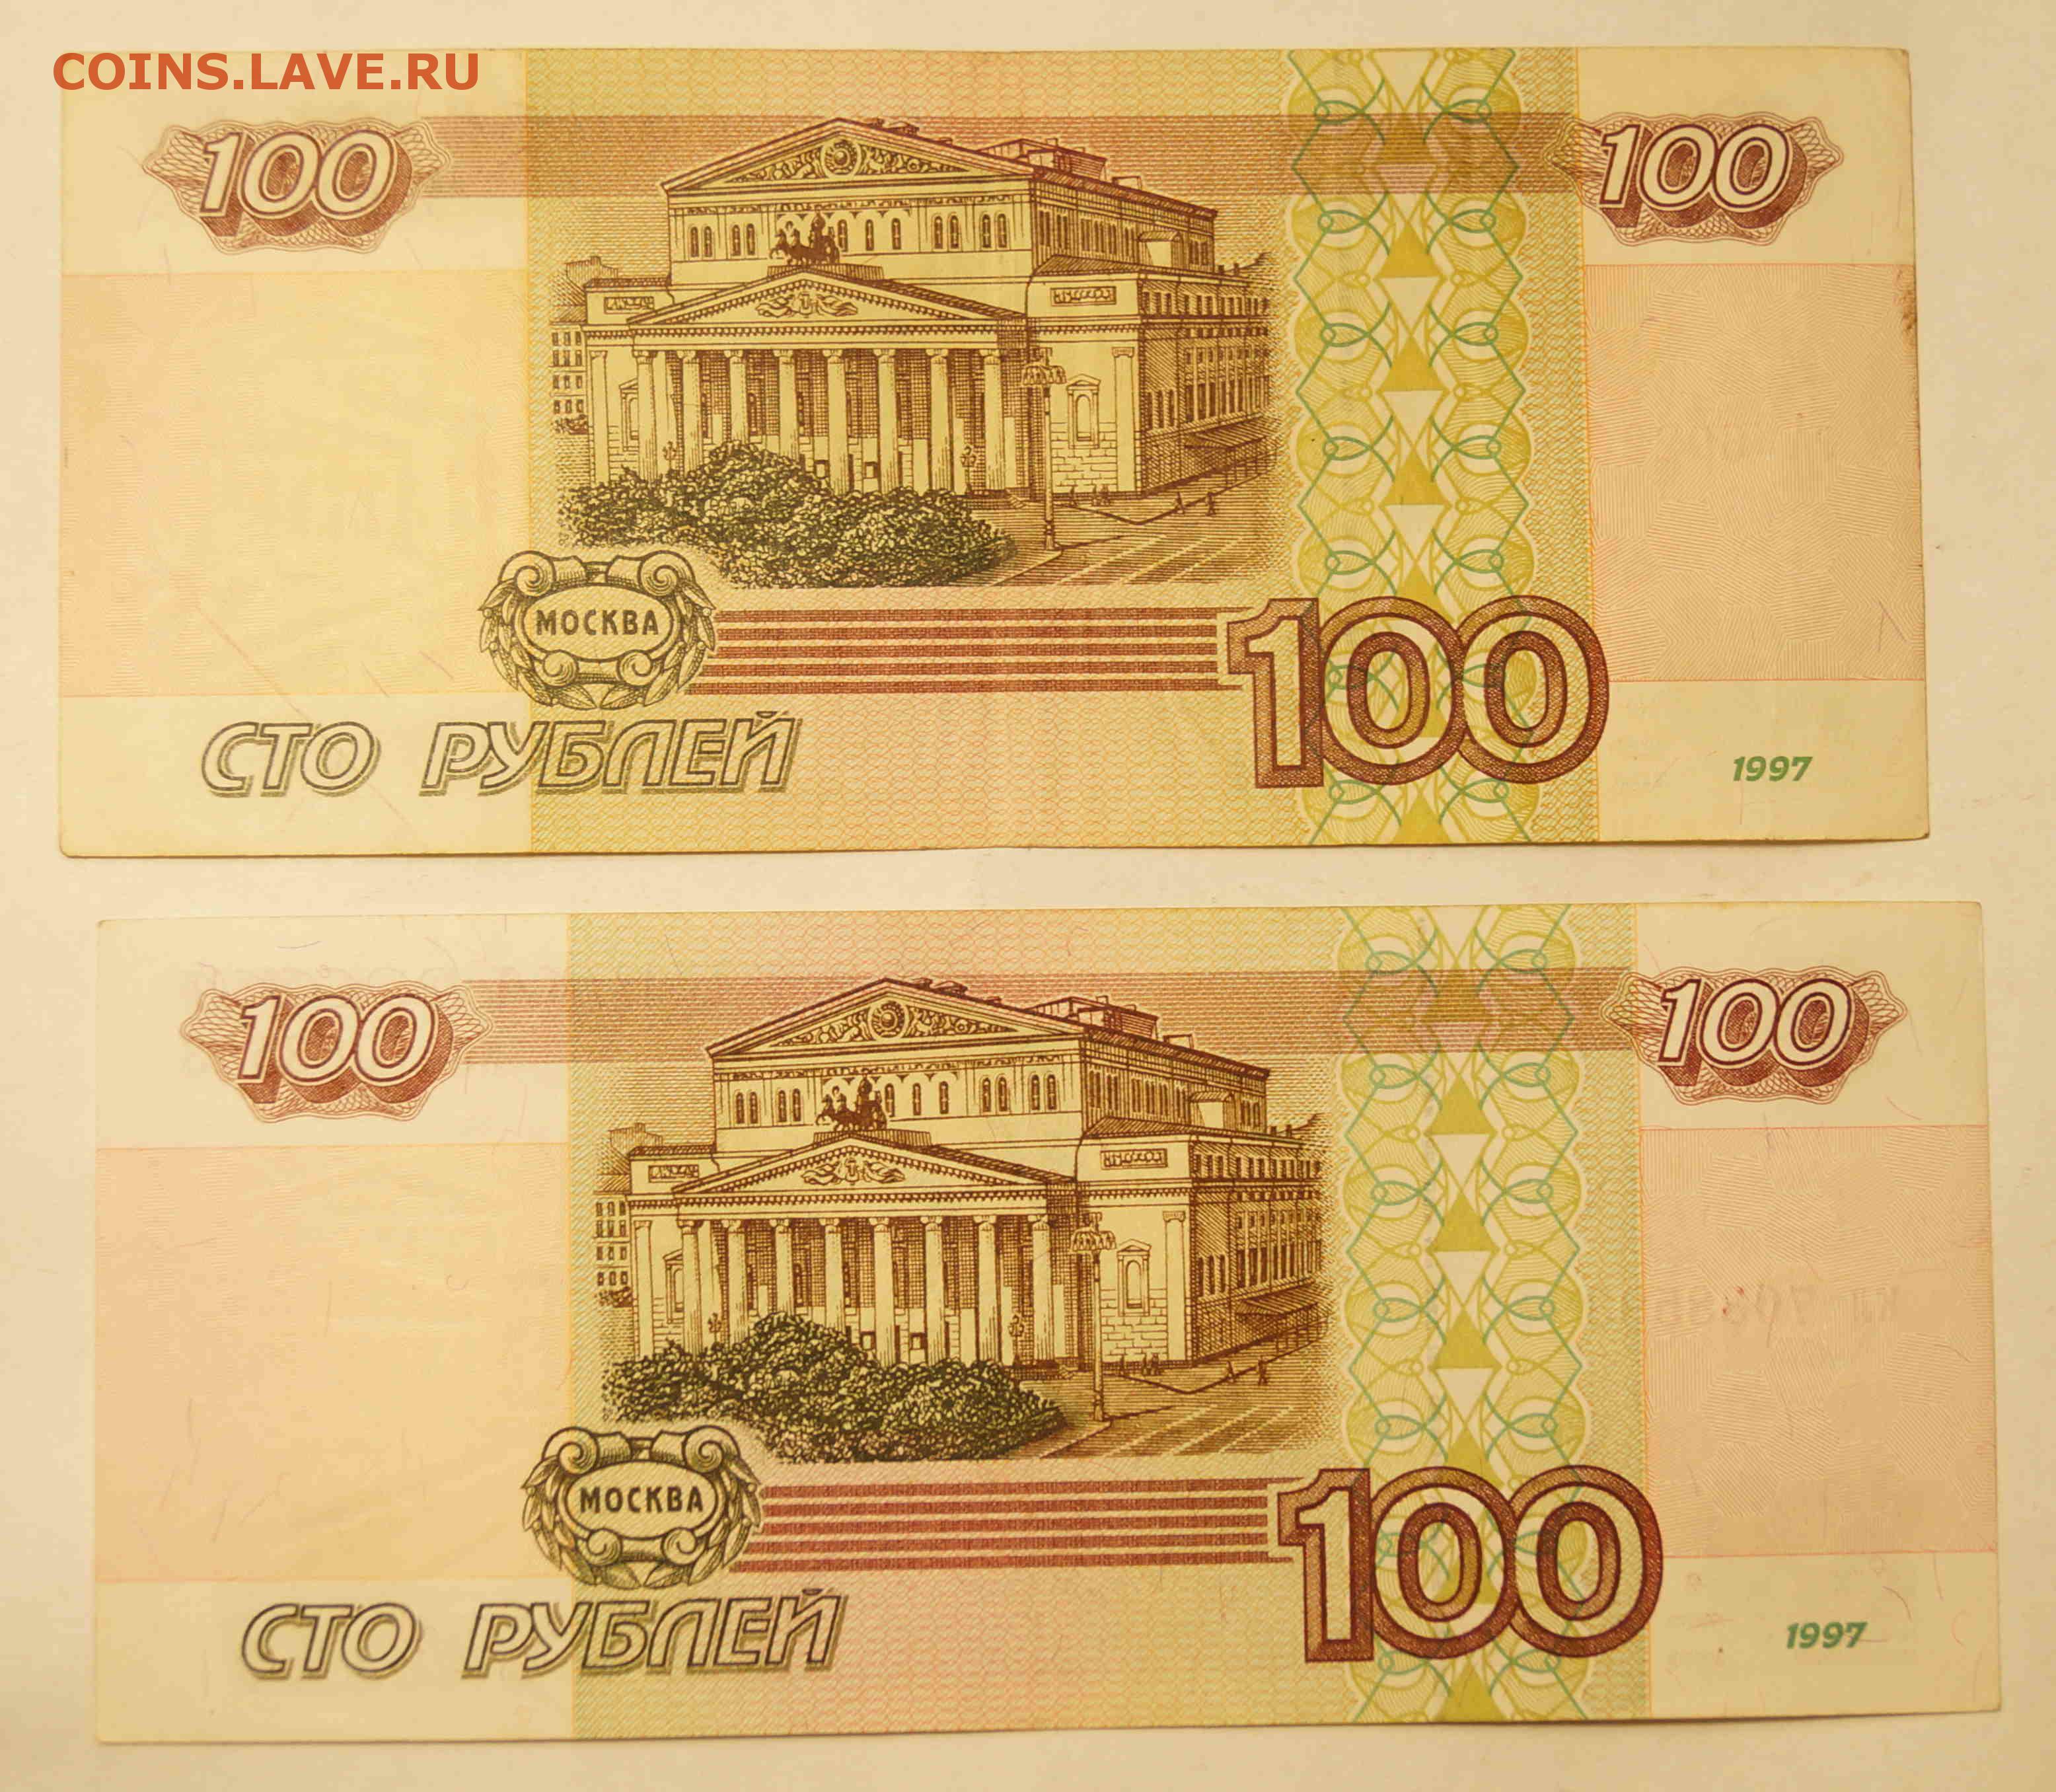 100.000 3. Купюра 100 тысяч рублей 1995. СТО тысяч рублей купюра. 100 000 Рублей 1995 года. Купюра 100.000 руб.